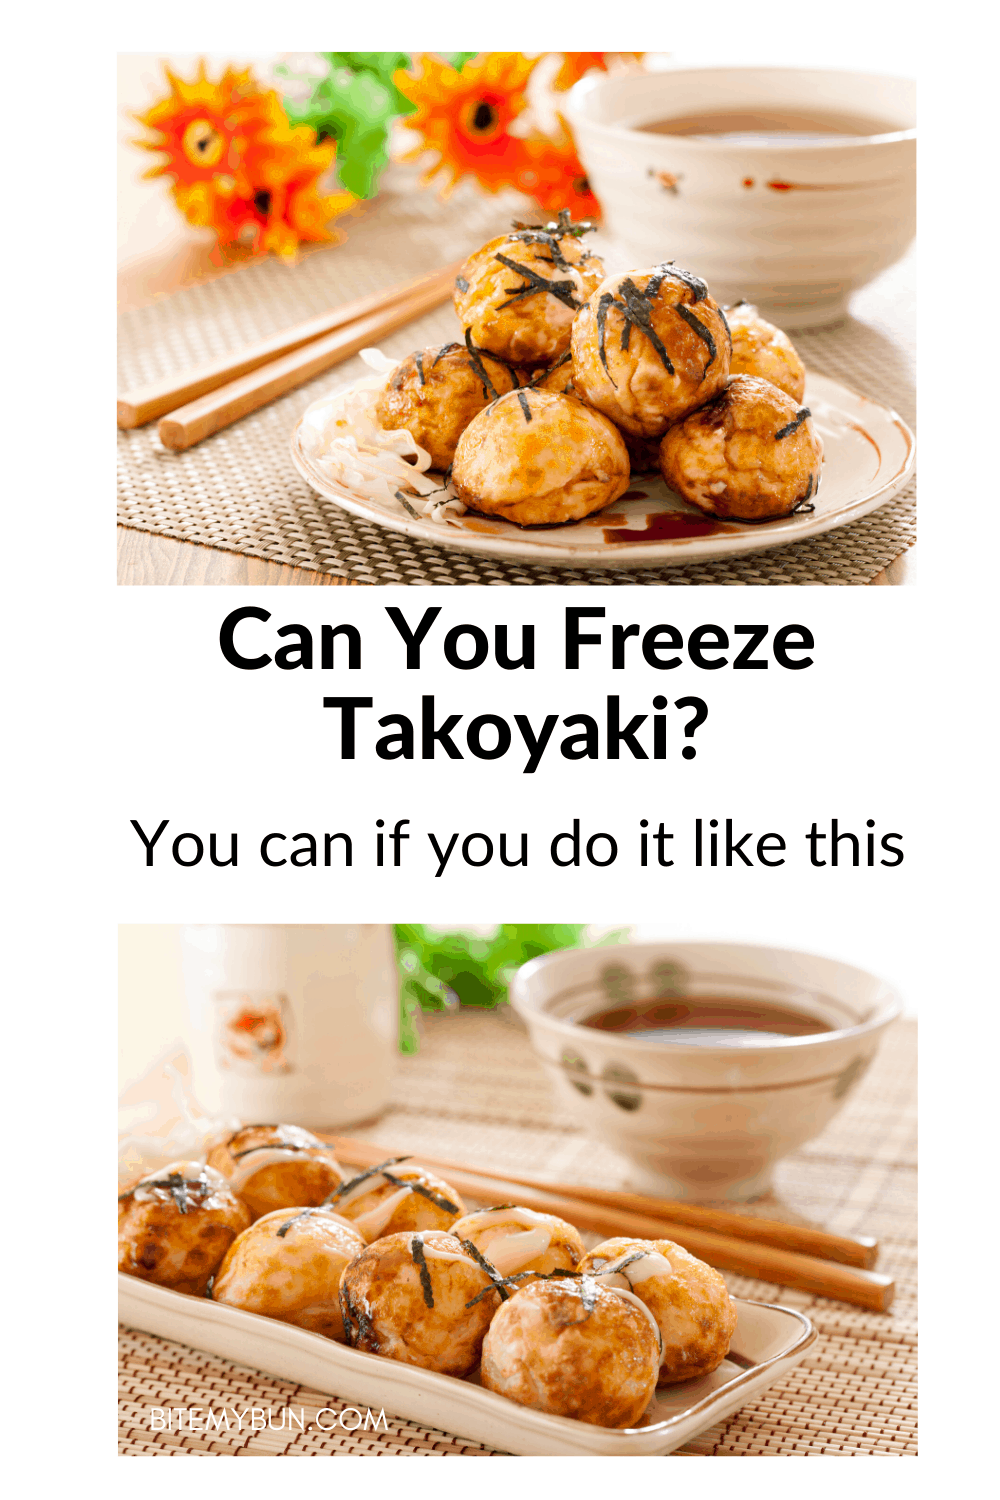 Você pode congelar takoyaki